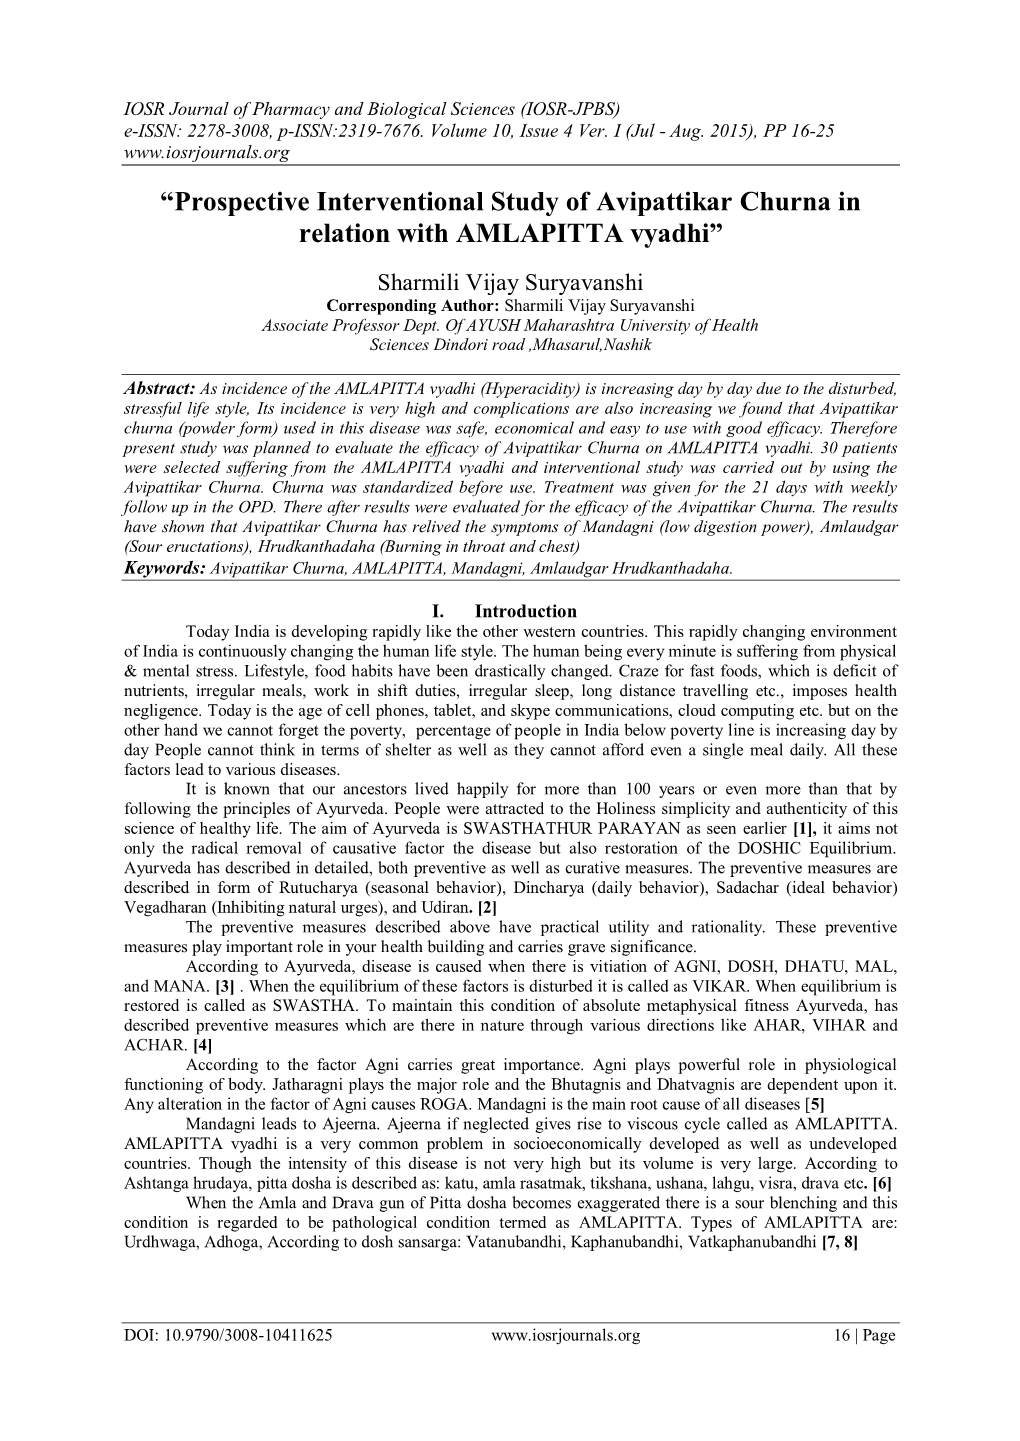 Prospective Interventional Study of Avipattikar Churna in Relation with AMLAPITTA Vyadhi”